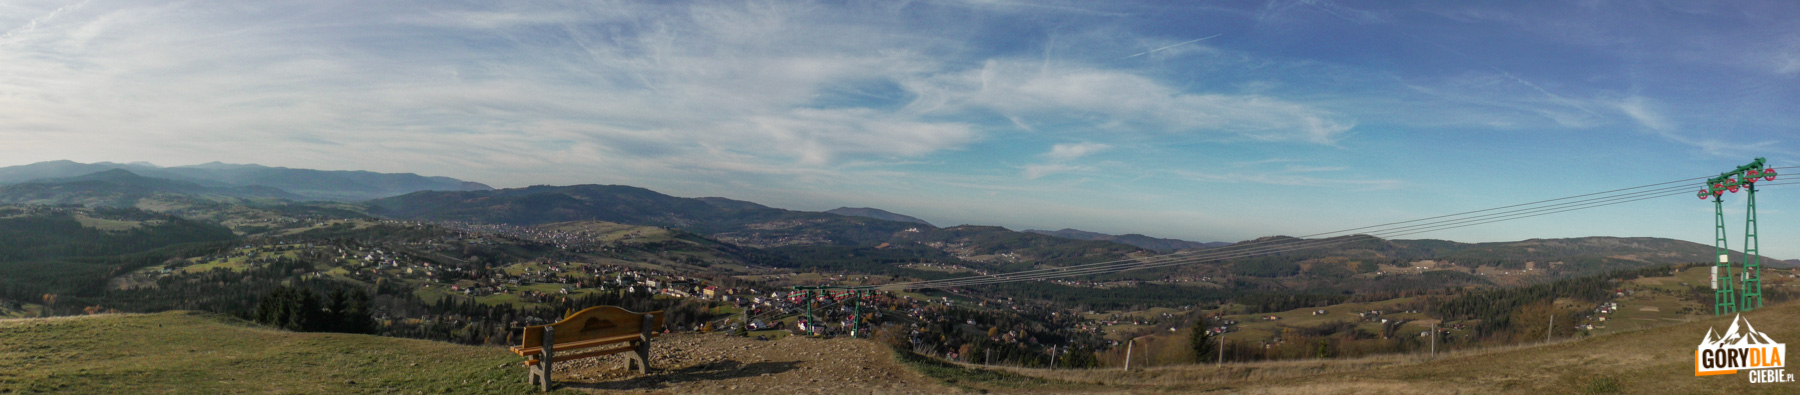 Ławeczka na Ochodzitej na tle gór Beskidu Śląsko-Morawskiego (Słowacja) z Łysą Górą (1323 m) i Beskidu Śląskiego ze szczytem Kiczory (990 m), Wielką Czantorią (995 m) i Baranią Górą (1220 m)